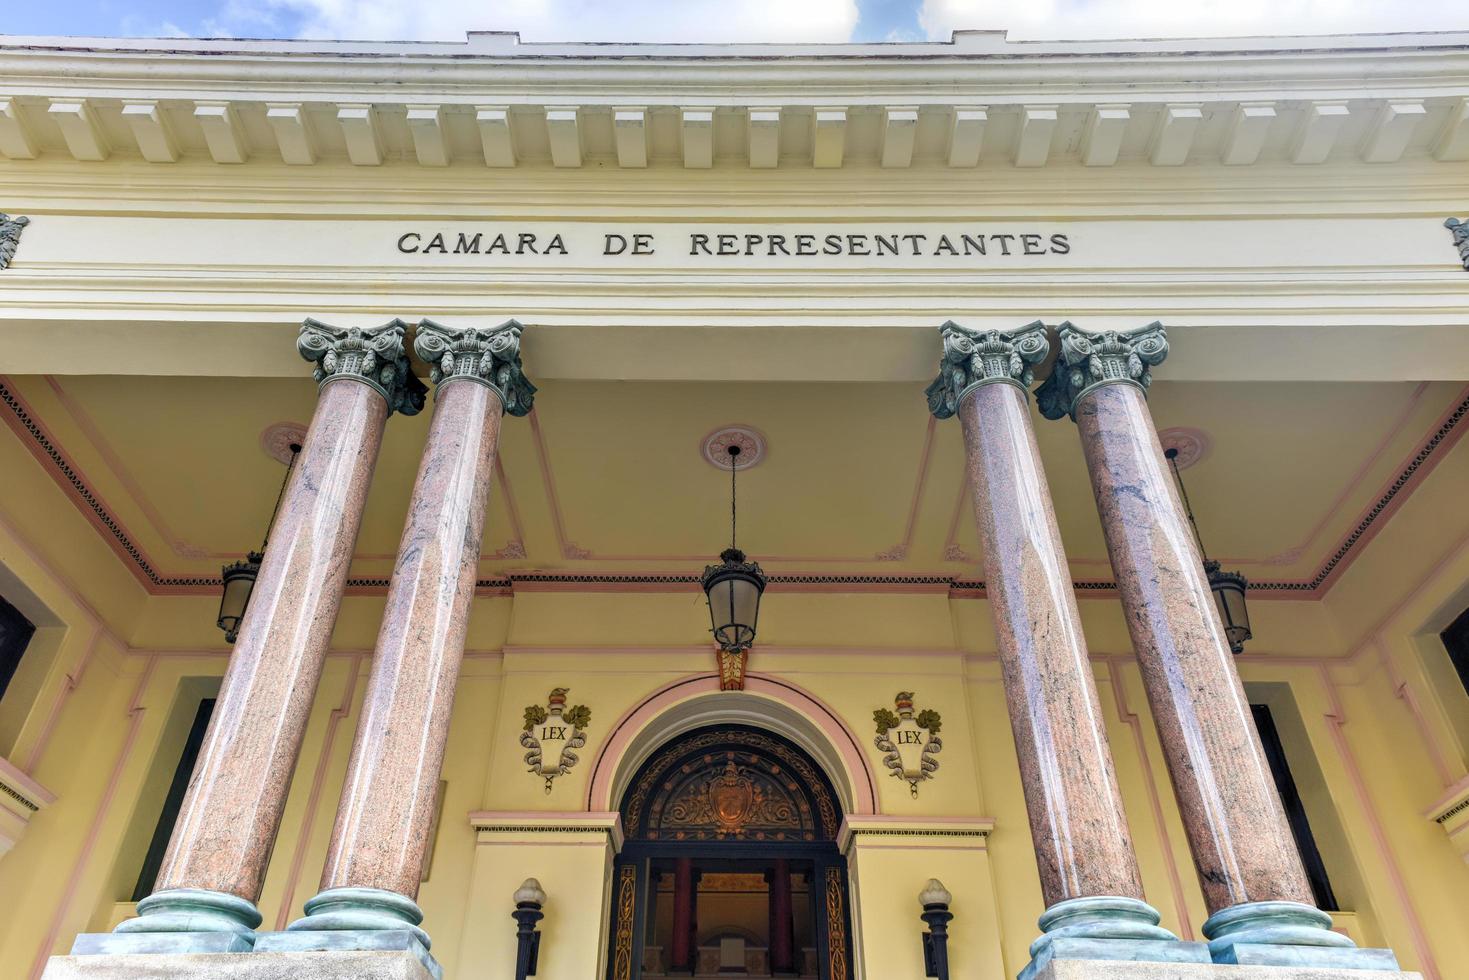 Camara de Representantes - the Republican House of Representatives, which following the Revolution became the town hall in Havana, Cuba, 2022 photo